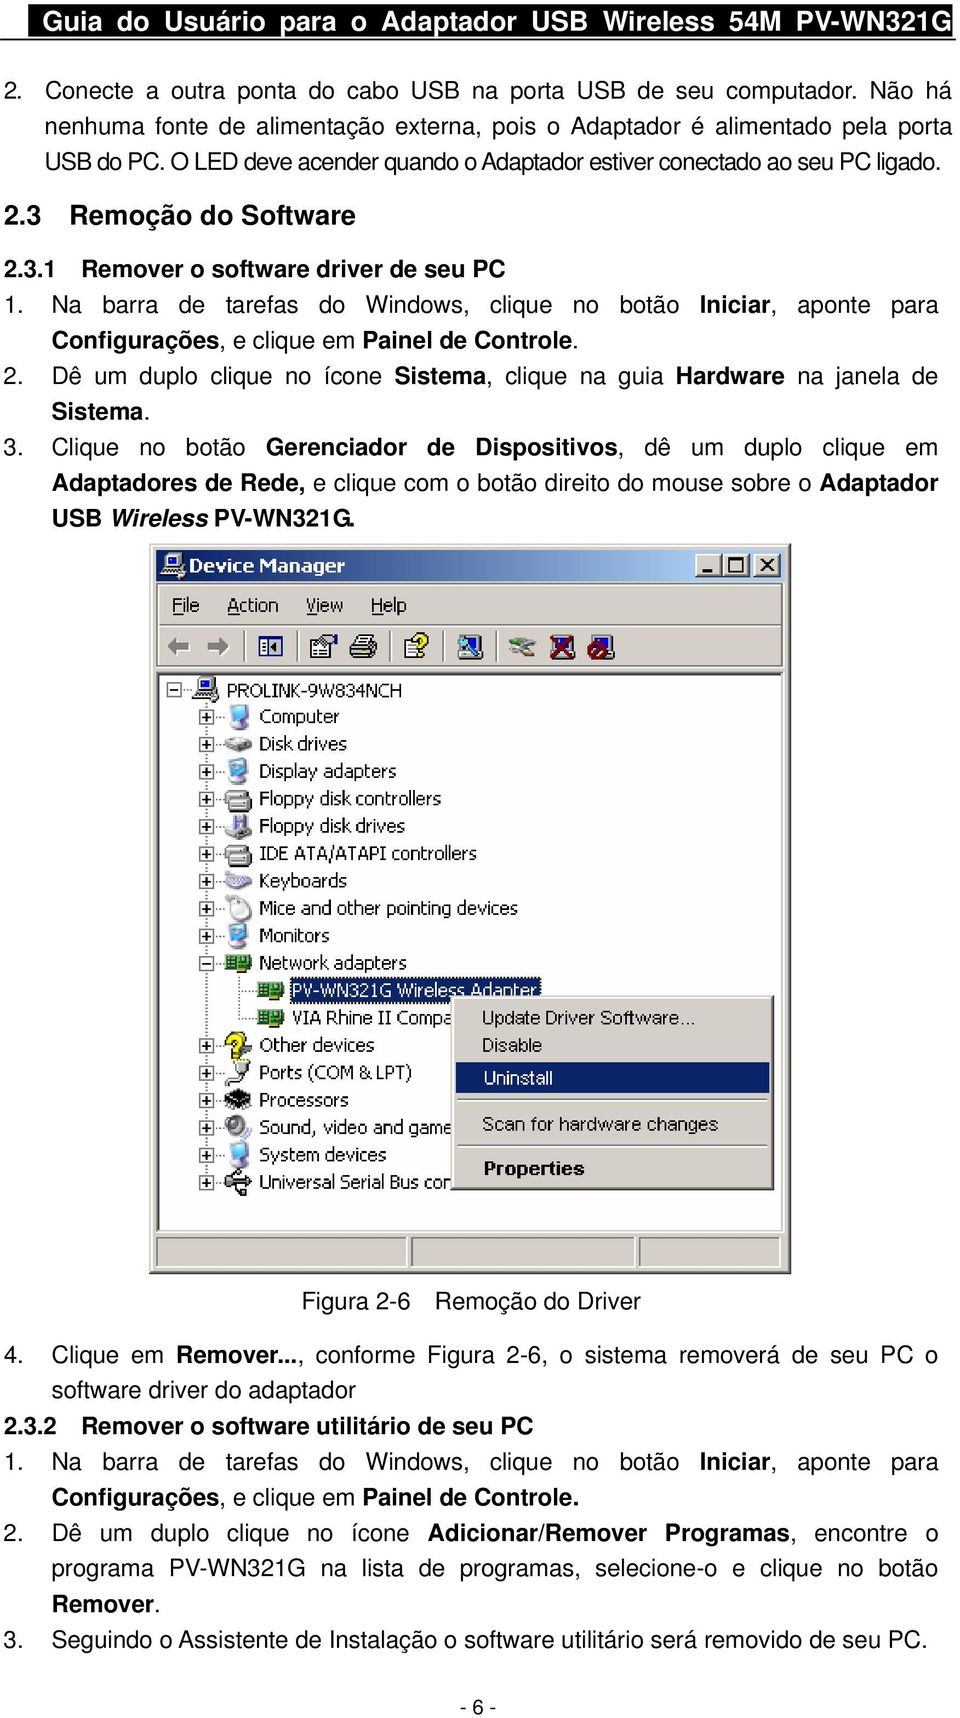 Remoção do Software 2.3.1 Remover o software driver de seu PC 1. Na barra de tarefas do Windows, clique no botão Iniciar, aponte para Configurações, e clique em Painel de Controle. 2. Dê um duplo clique no ícone Sistema, clique na guia Hardware na janela de Sistema.